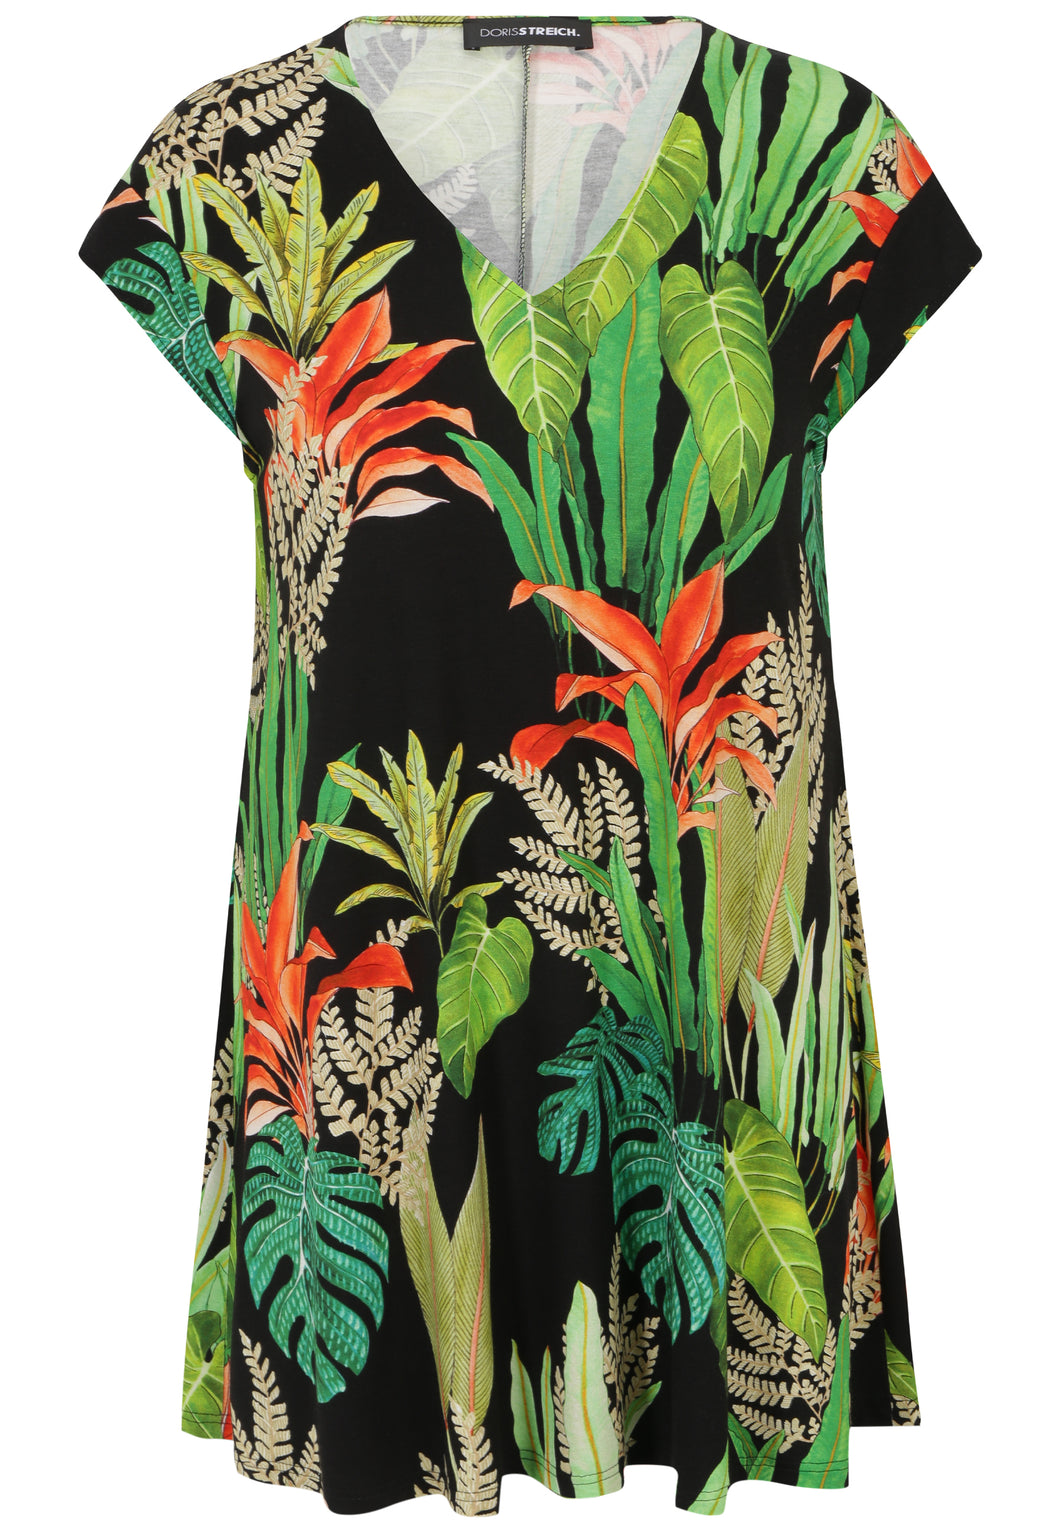 Doris Streich Long-Shirt mit Blätter-Print und kurzen Ärmeln Gr 44 - 56